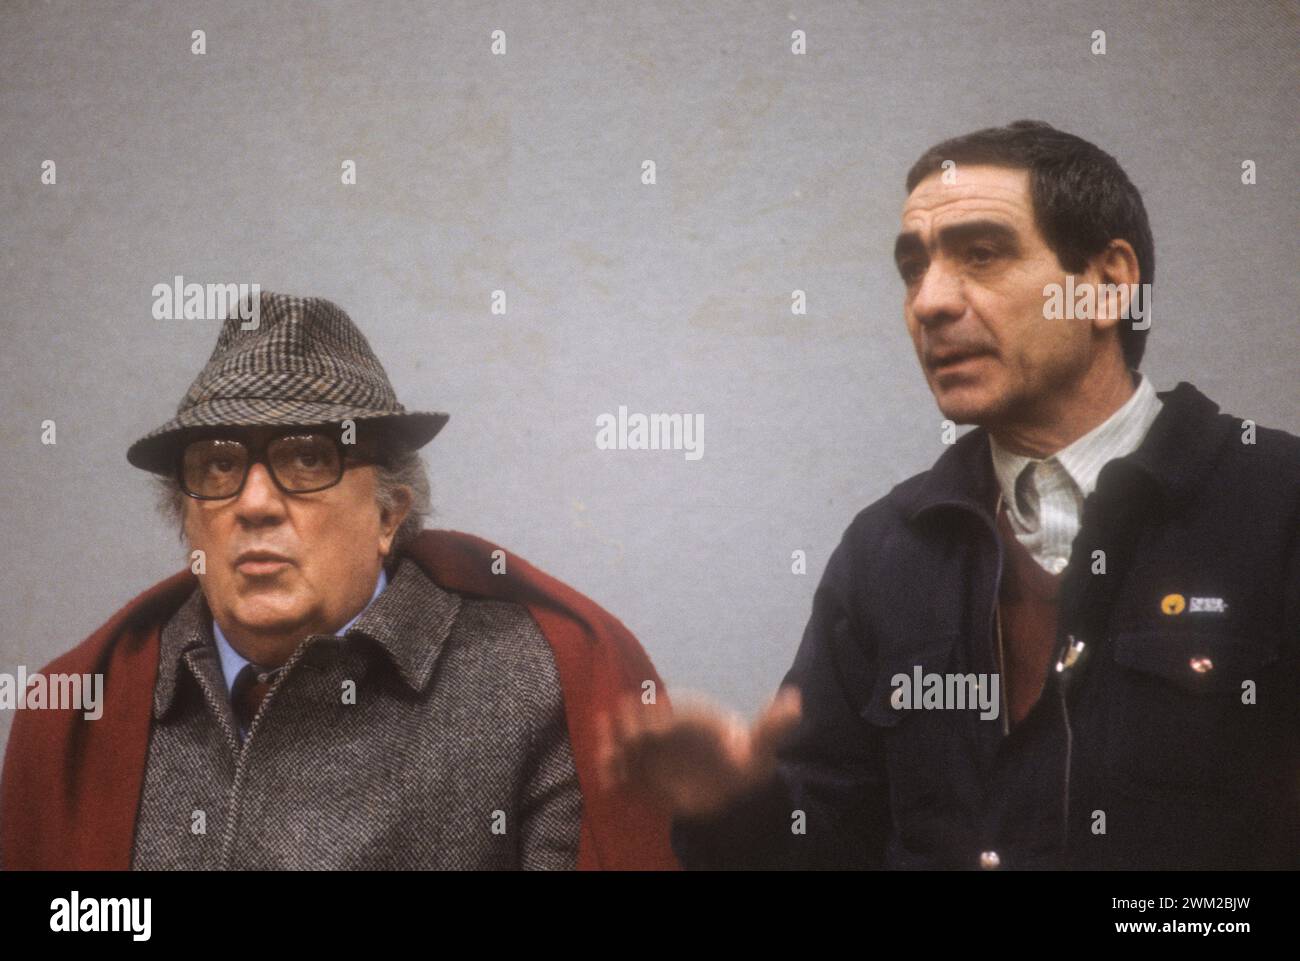 7395016 il regista Federico Fellini (a sinistra) e il direttore della fotografia Giuseppe Rotunno sul set del film "e la nave va", Cinecittà Studios, Roma, 1983 (foto); © Marcello Mencarini. Tutti i diritti riservati 2024. Foto Stock